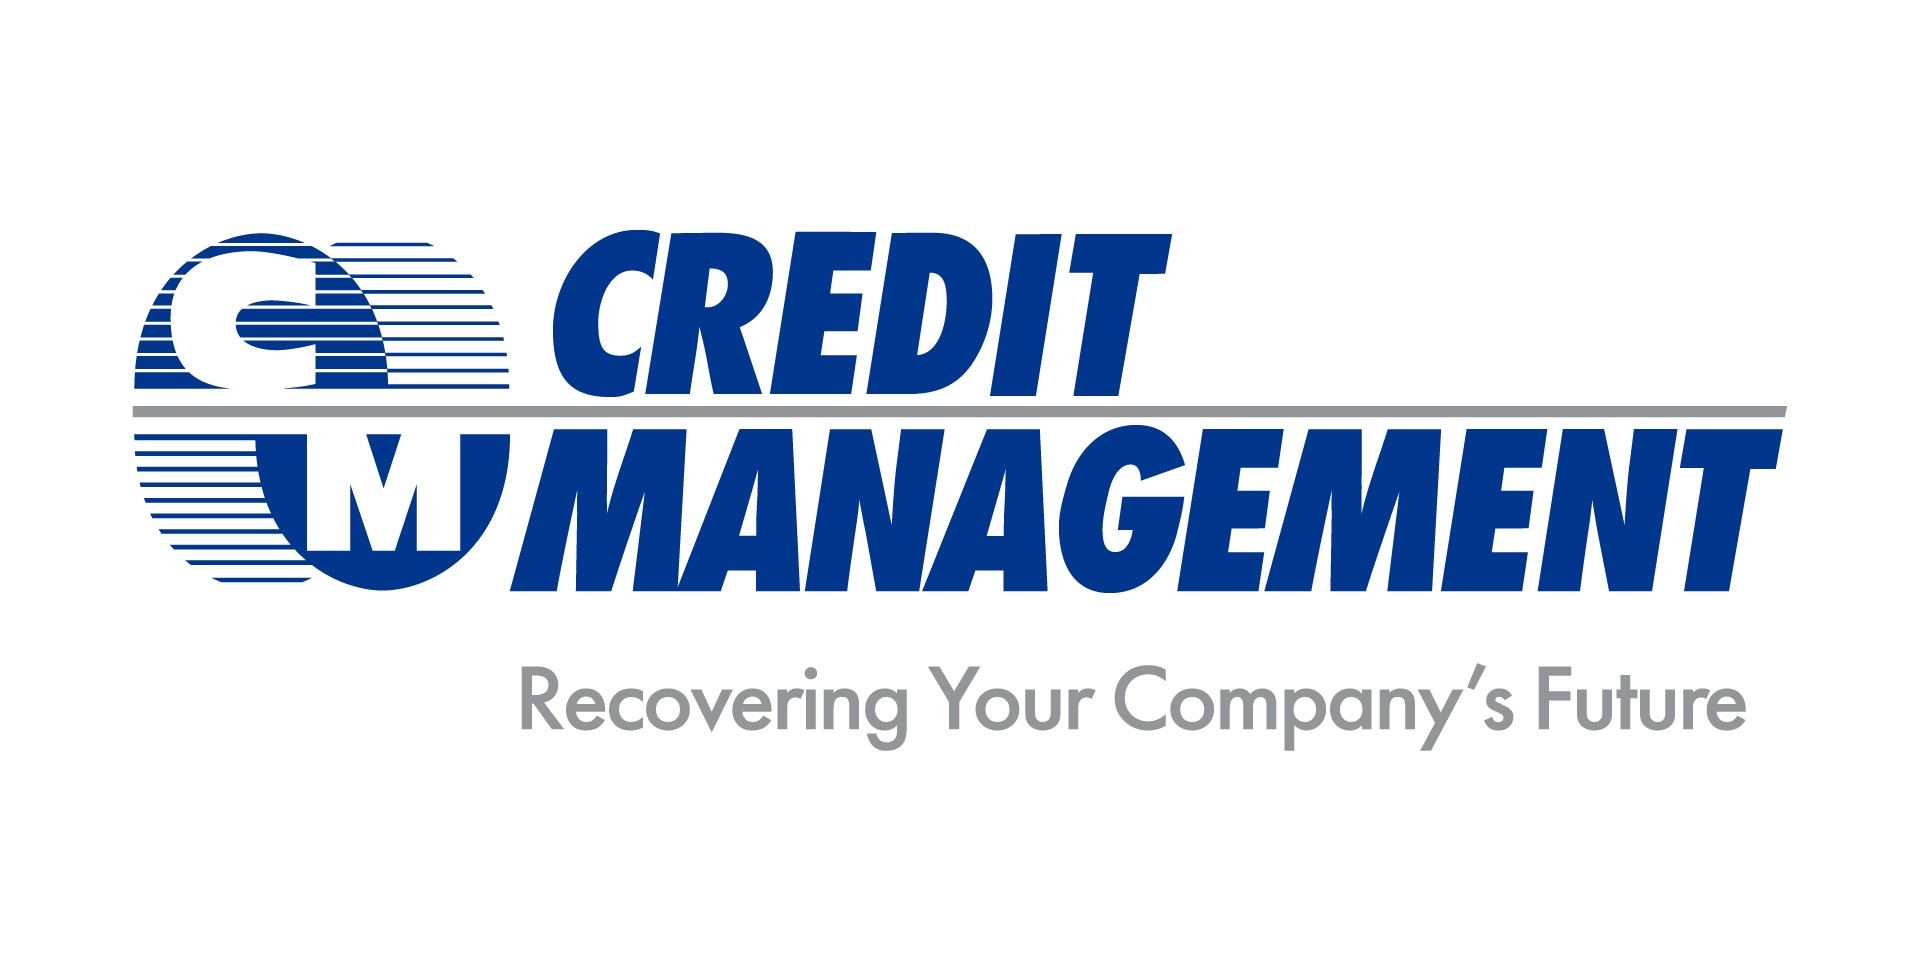 Credit Management Services Inc